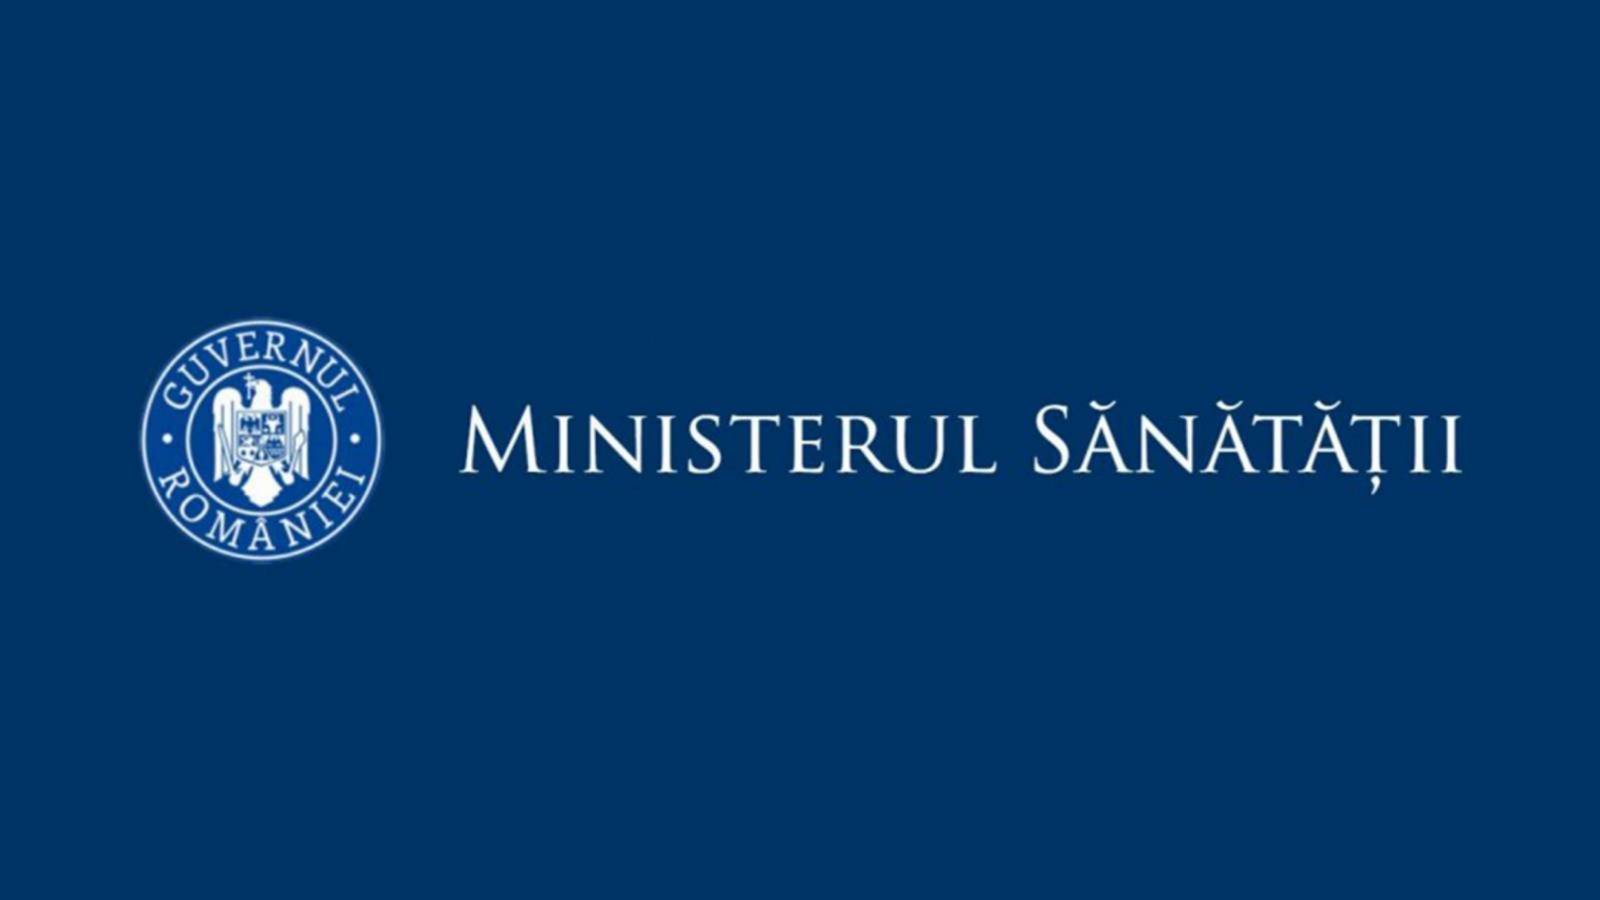 Taux d'incidence du ministère de la Santé pour les comtés de Roumanie